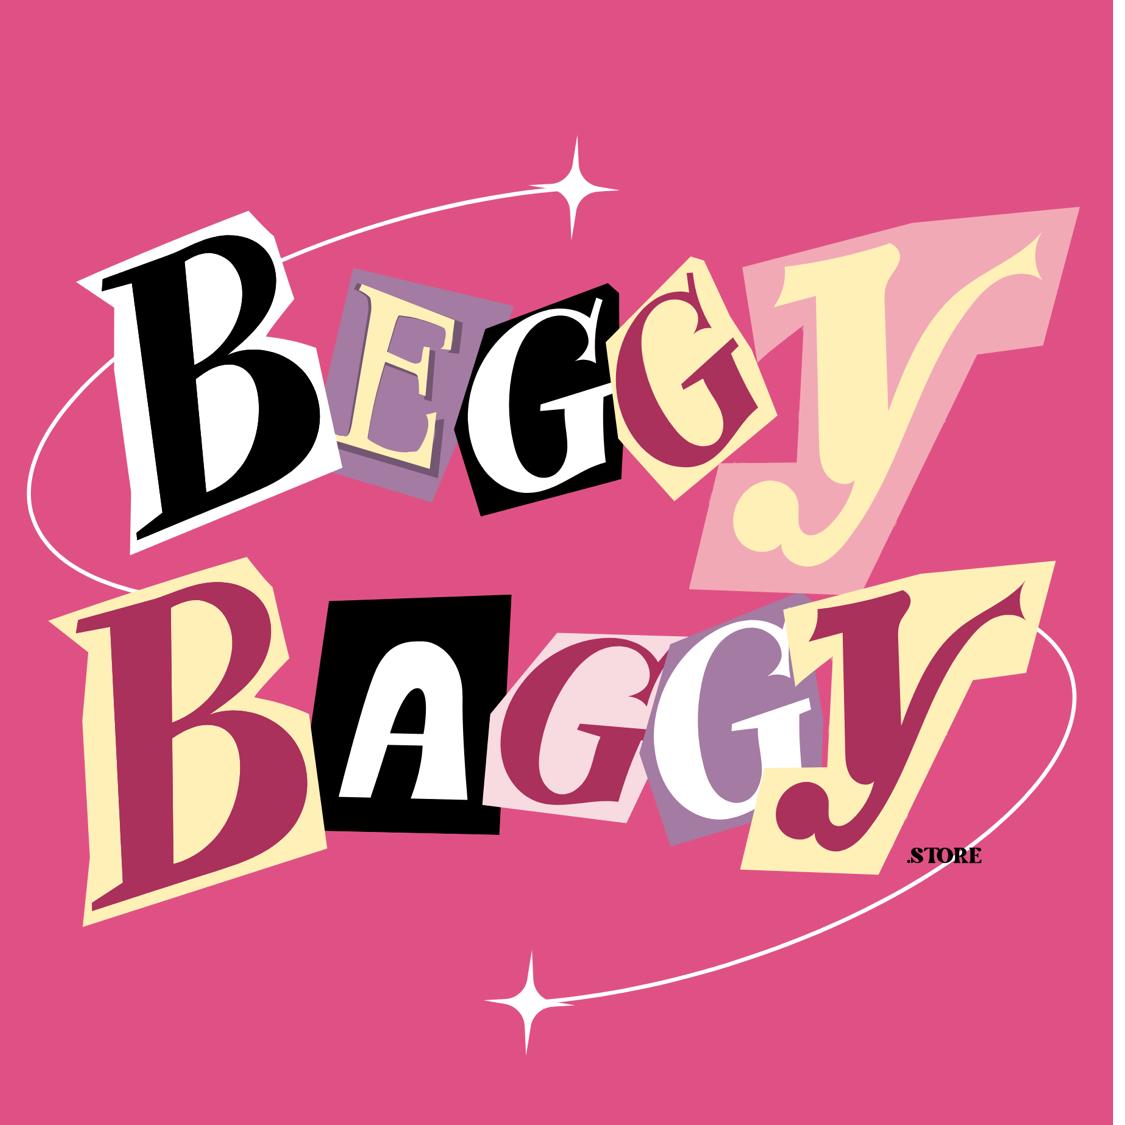 BeggyBaggy